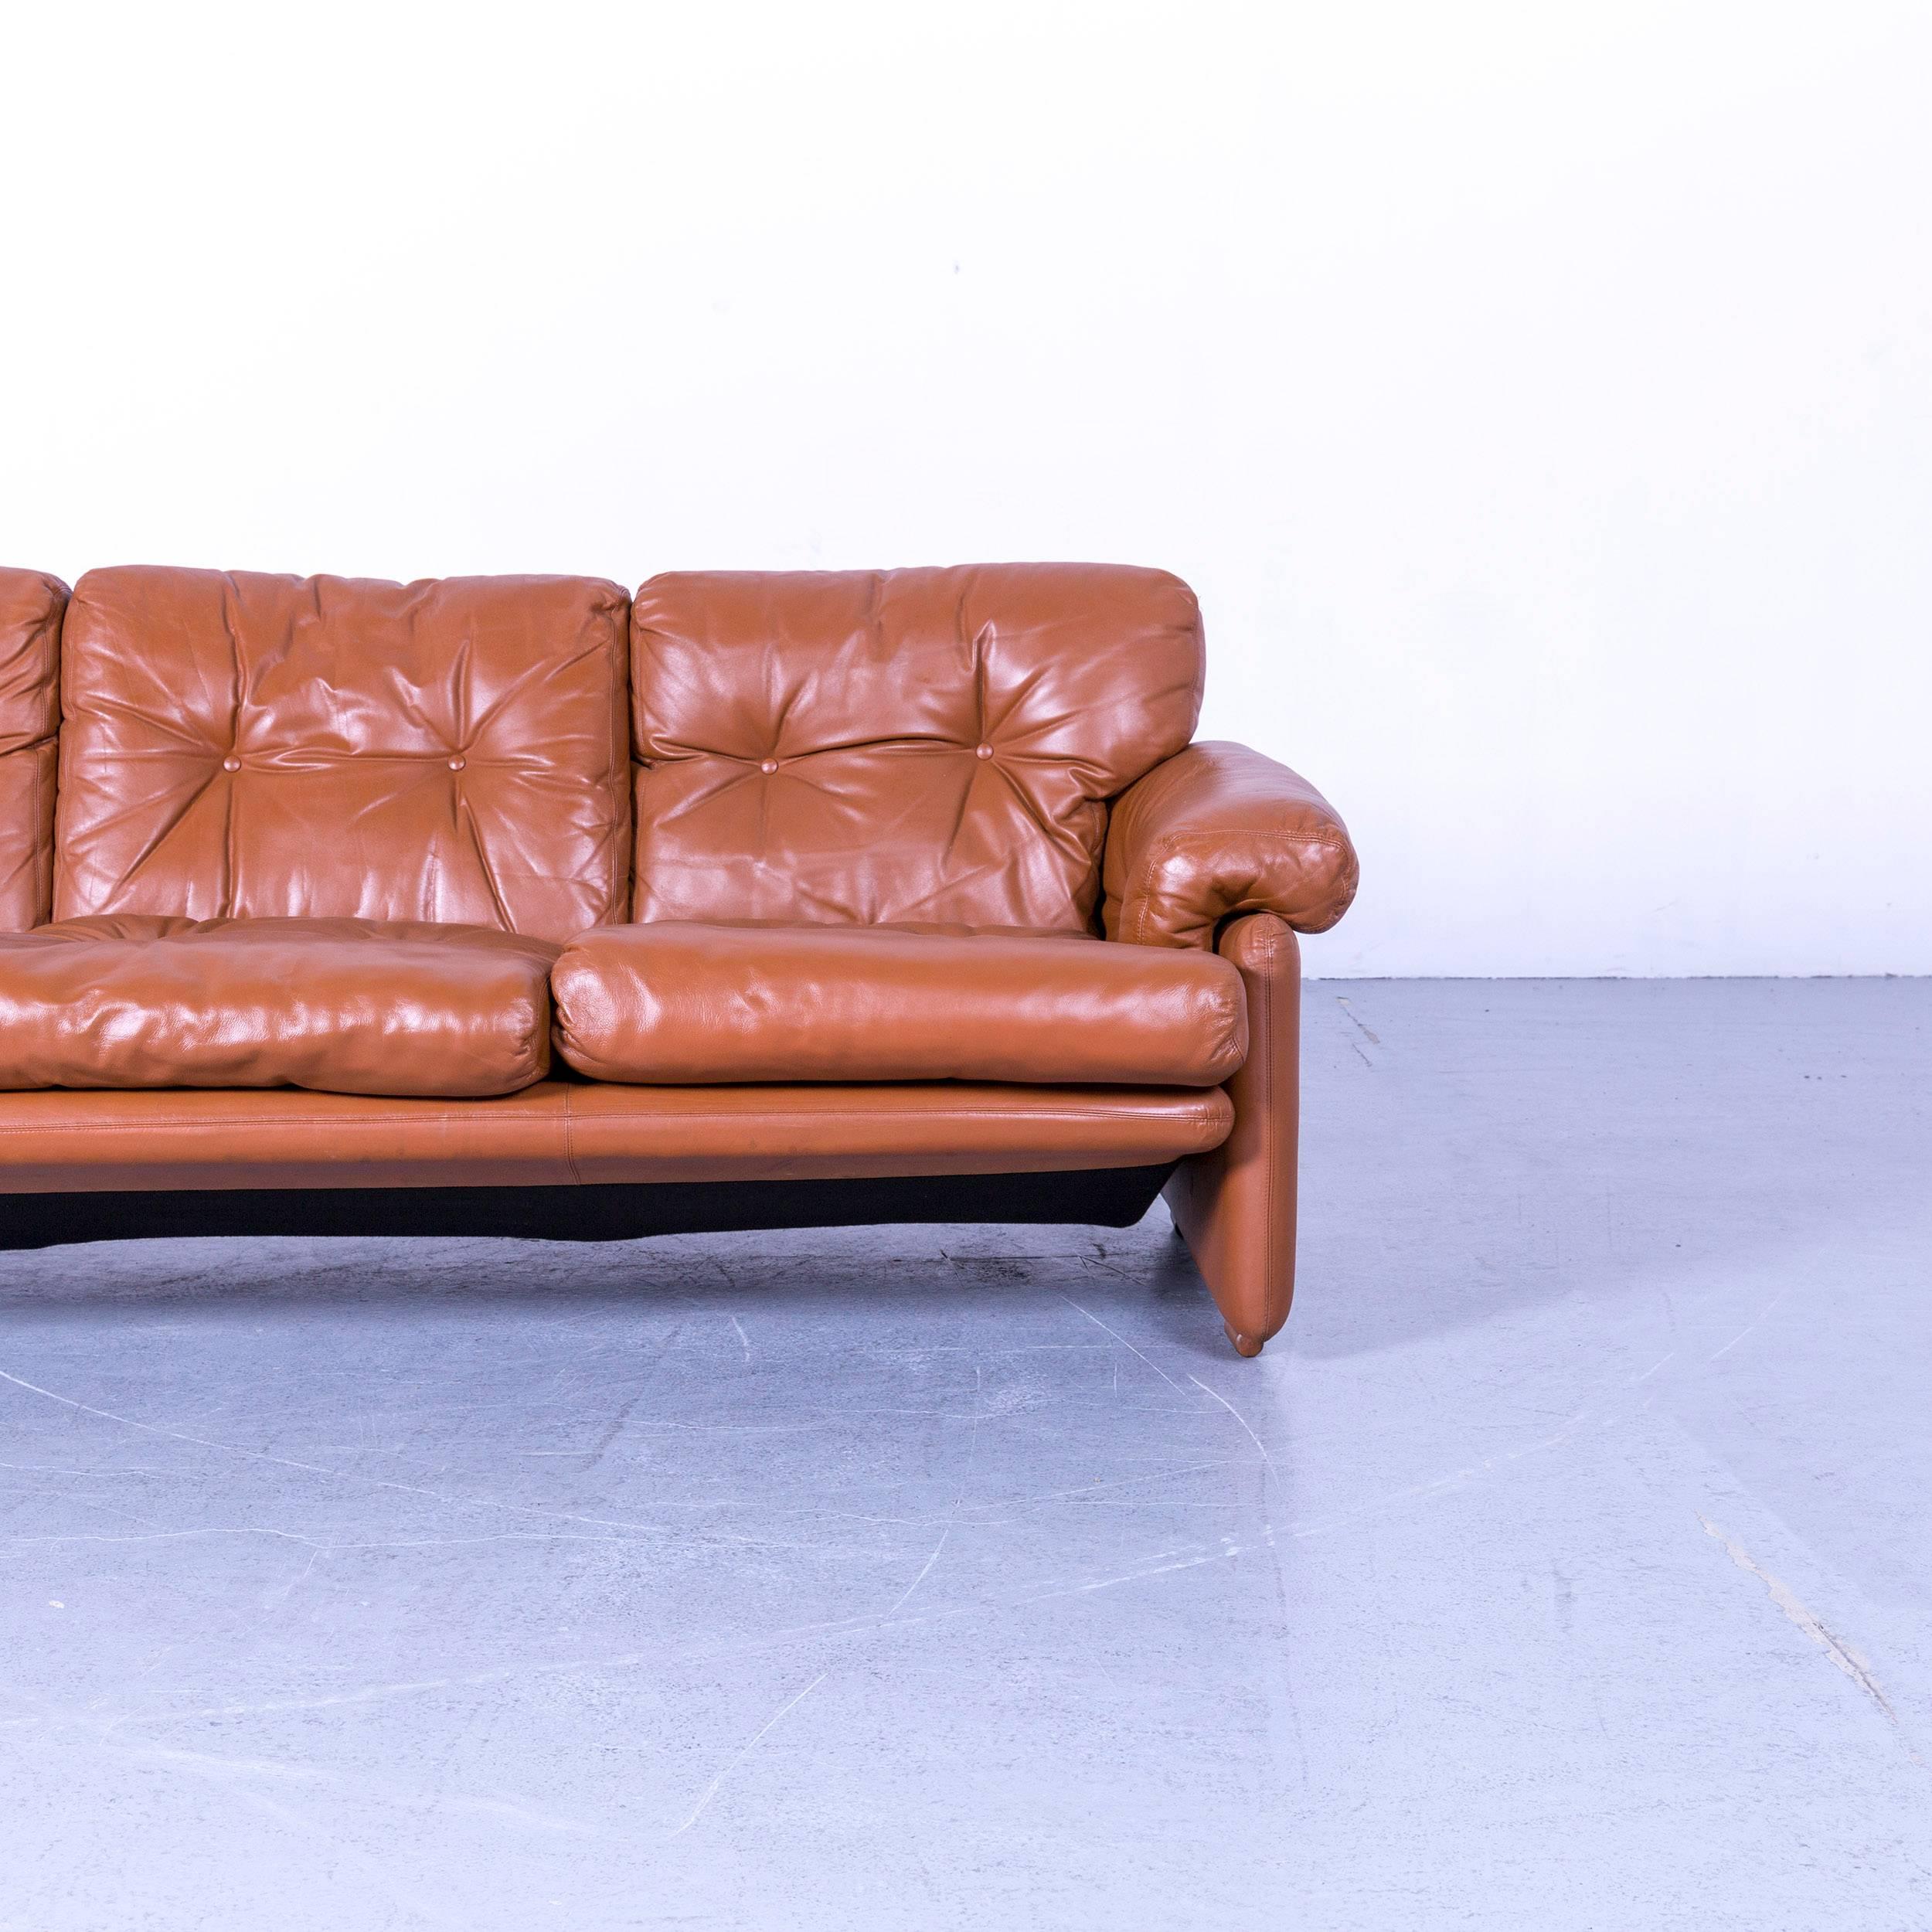 B&B Italia Coronado Designer Sofa, Brown Leather Three-Seat In Fair Condition For Sale In Cologne, DE